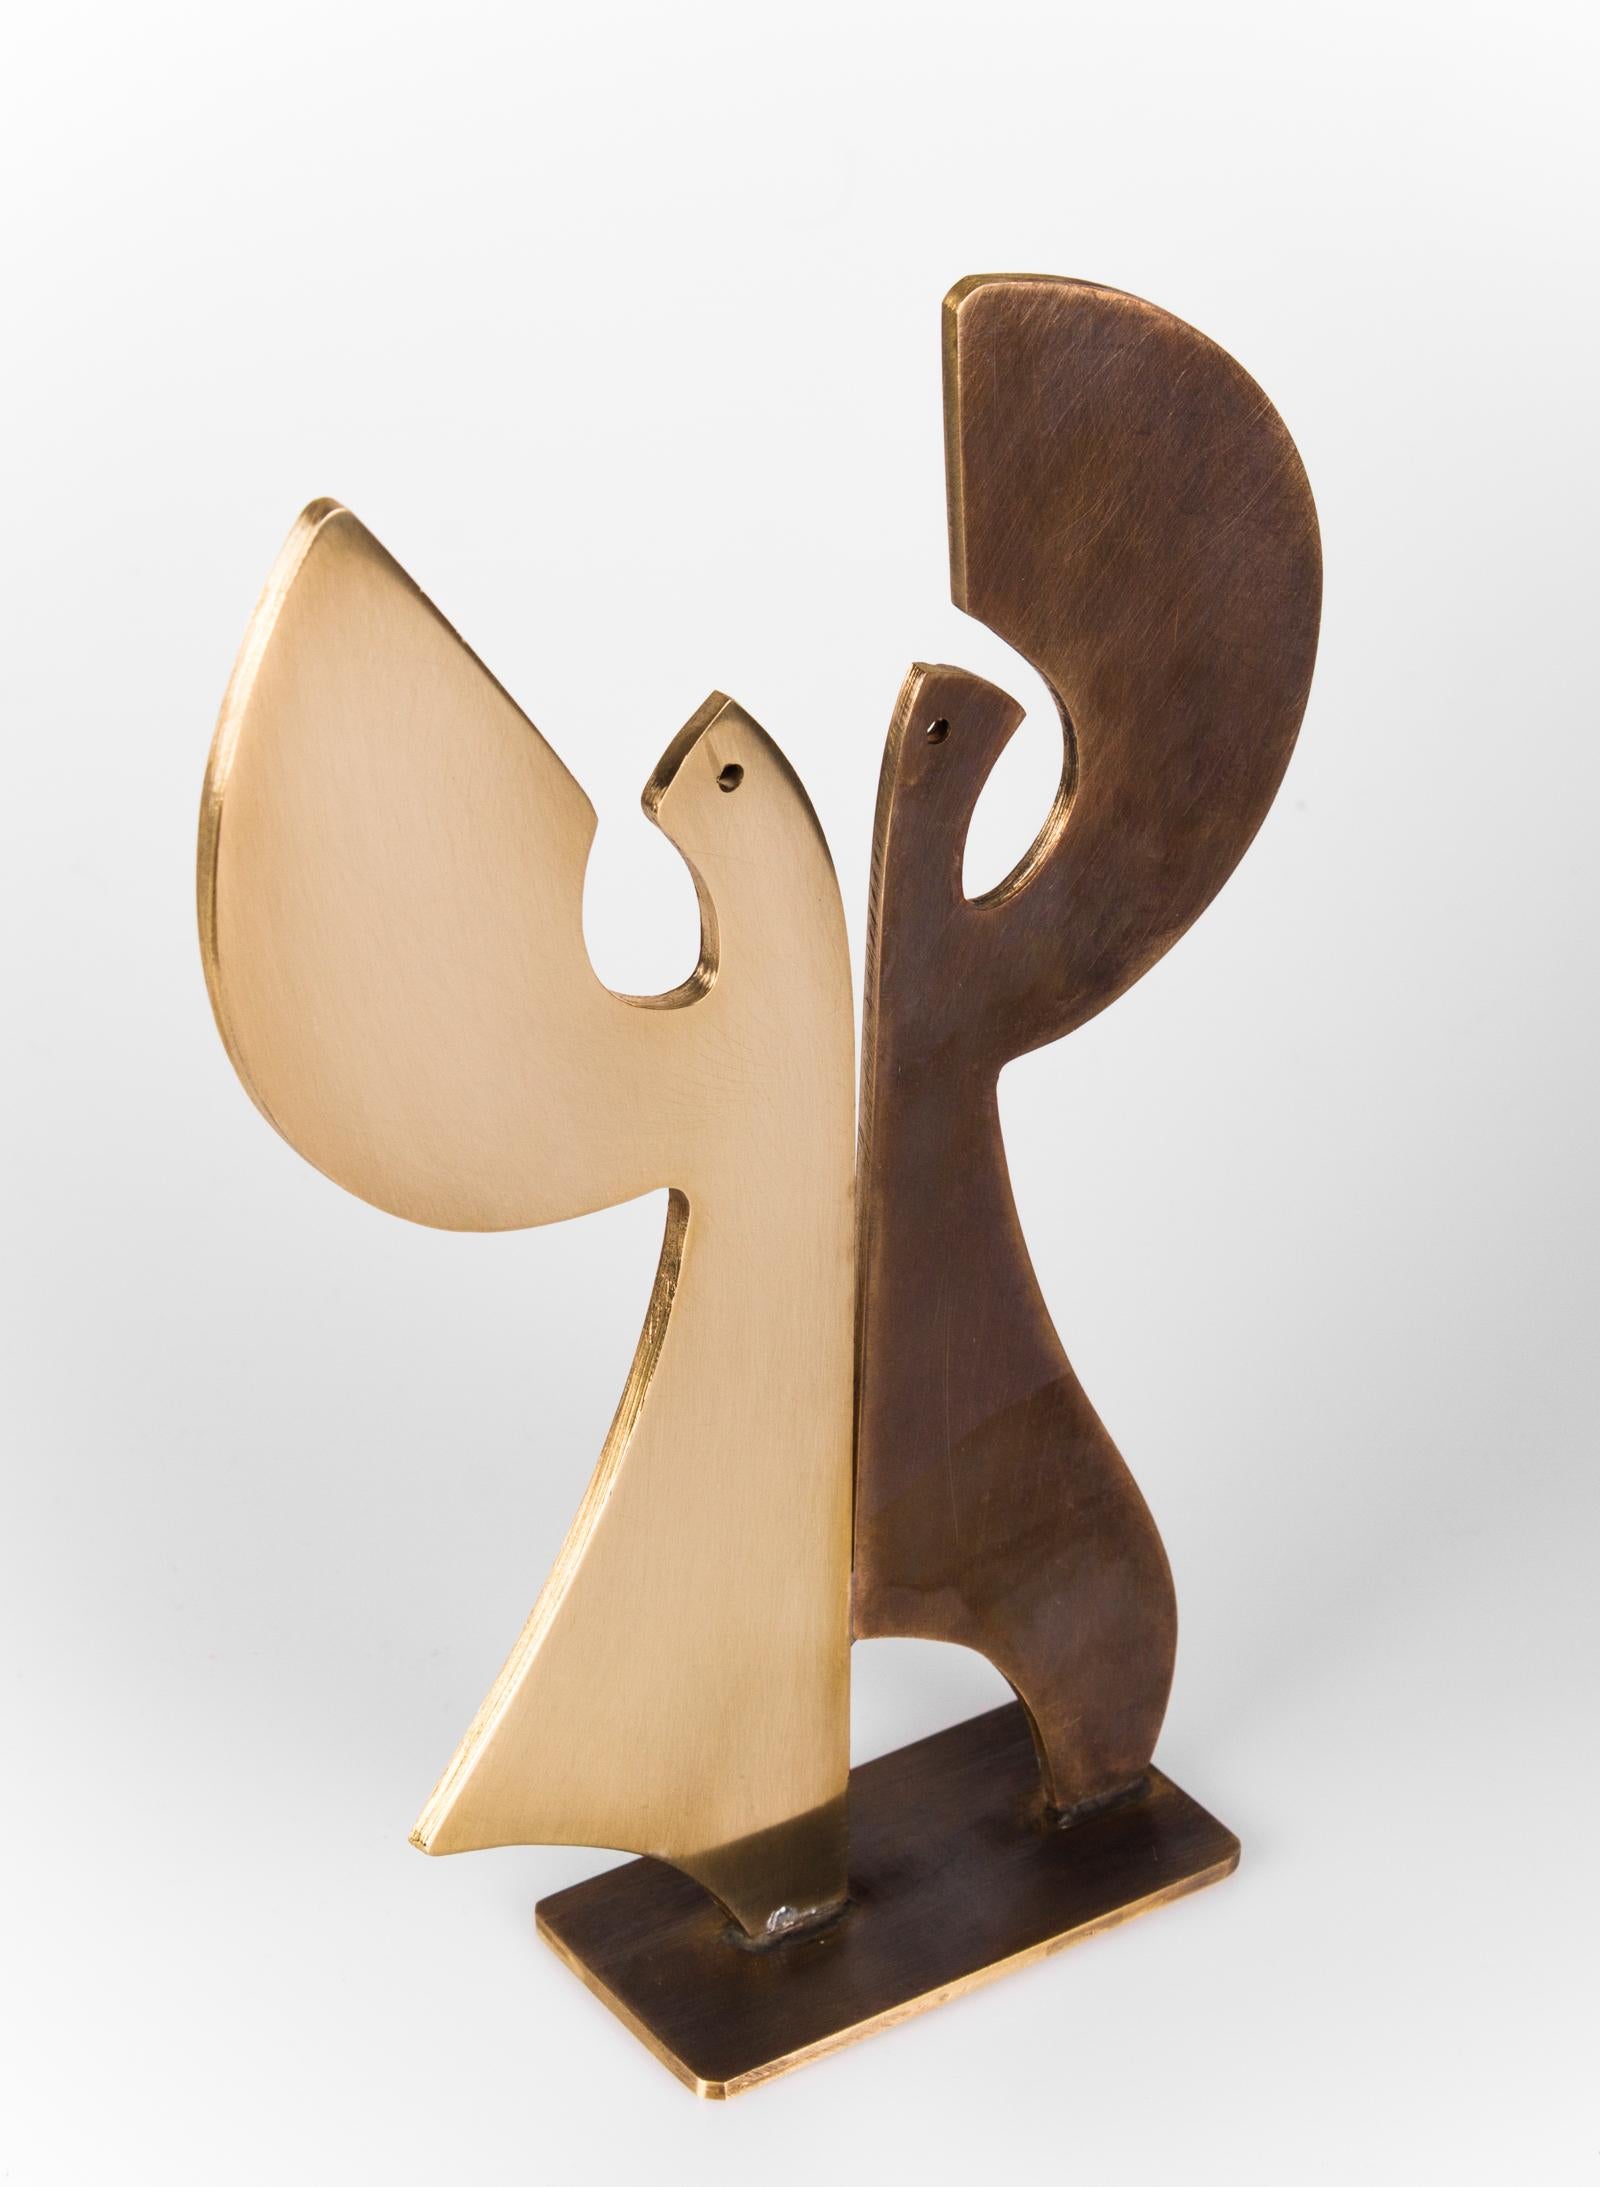 Vangelis Ilias Figurative Sculpture - Dancers - 1 - Minimal Bronze Abstract Sculpture